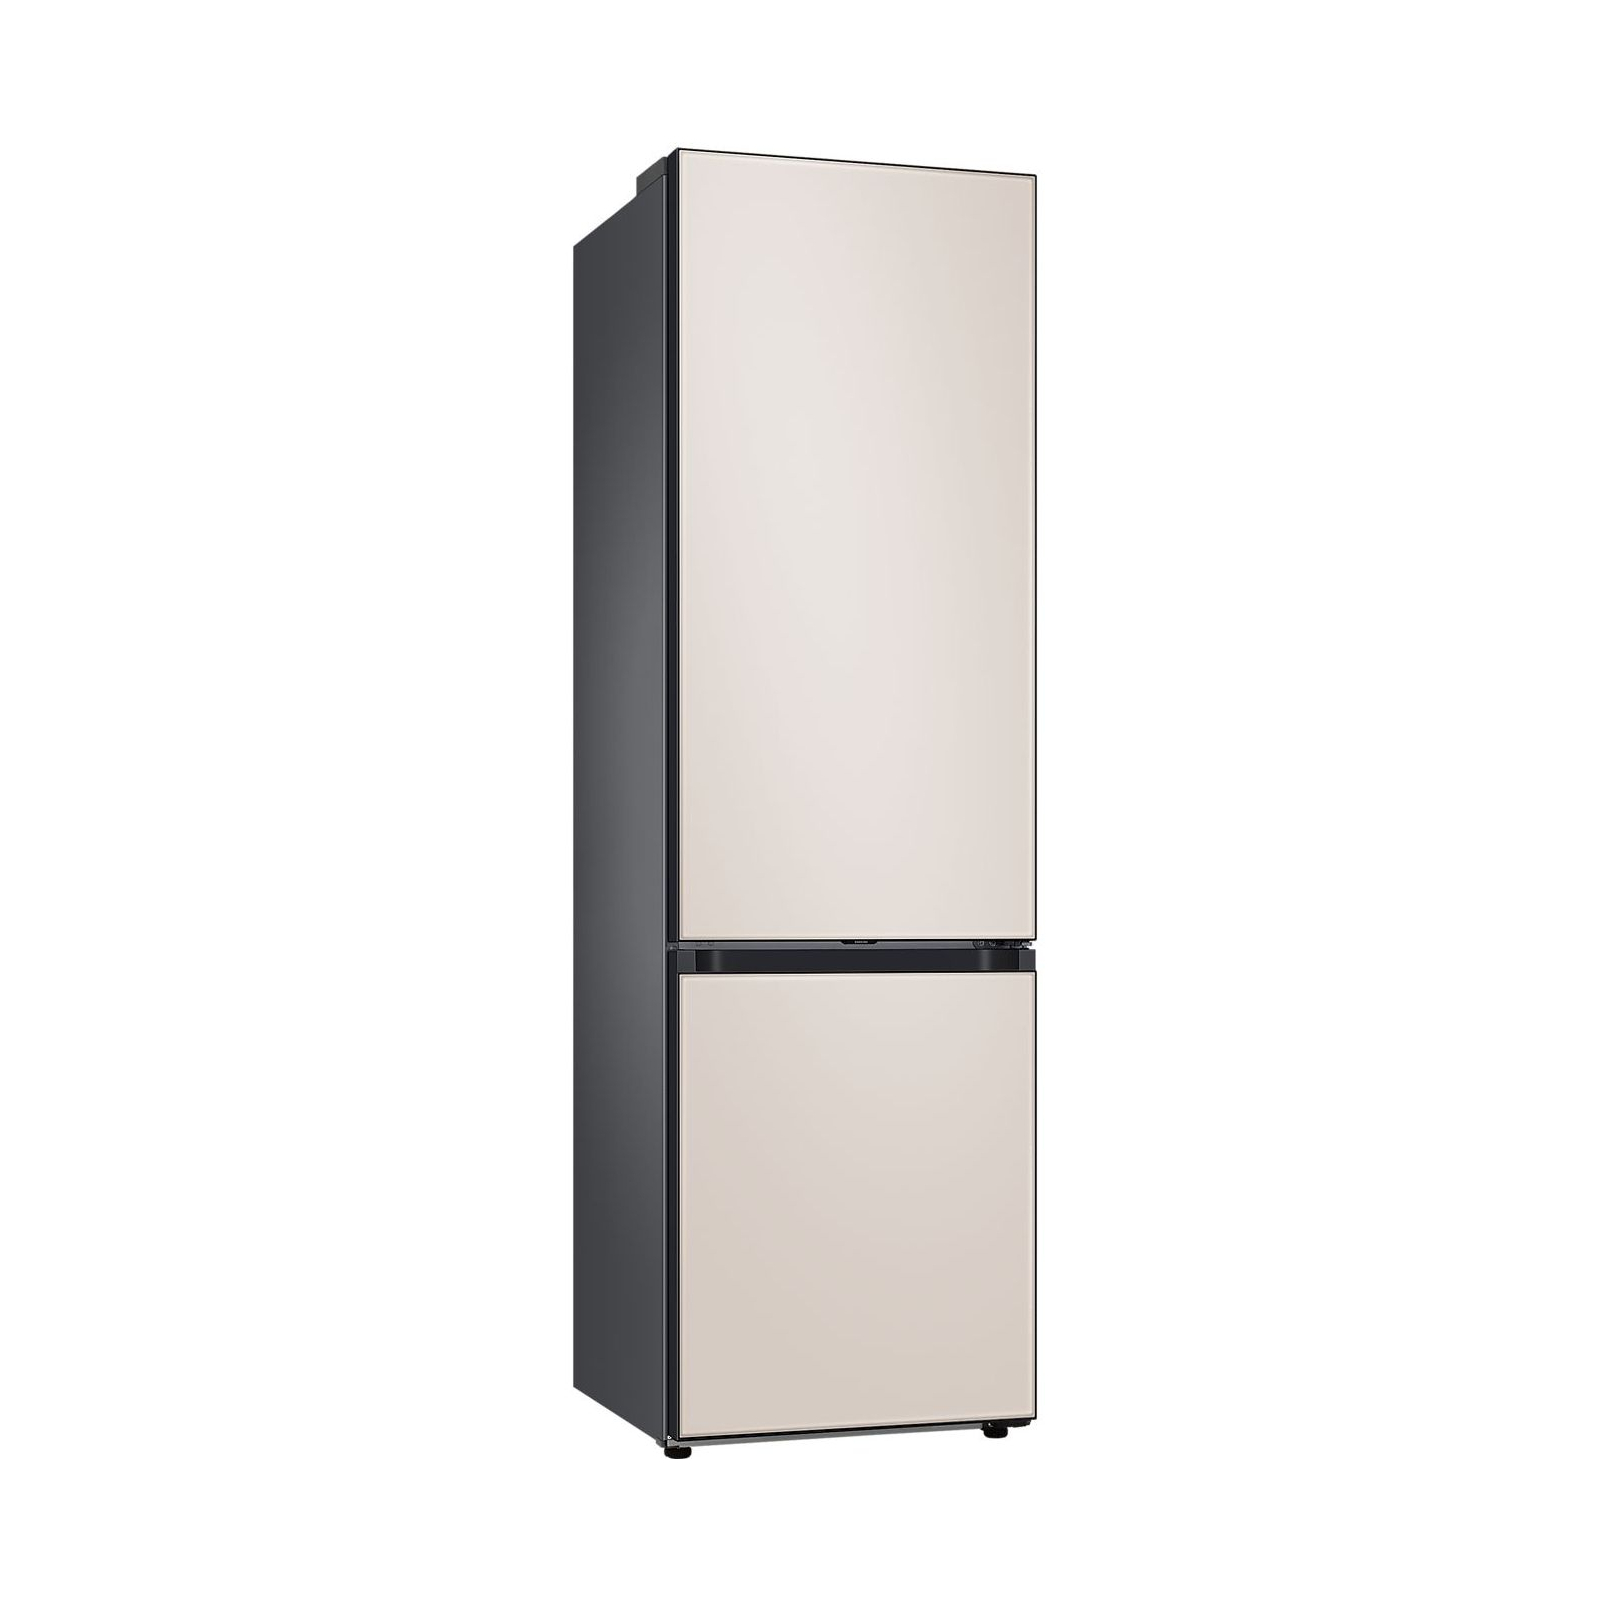 Холодильник Samsung RB38A6B6239/UA изображение 6